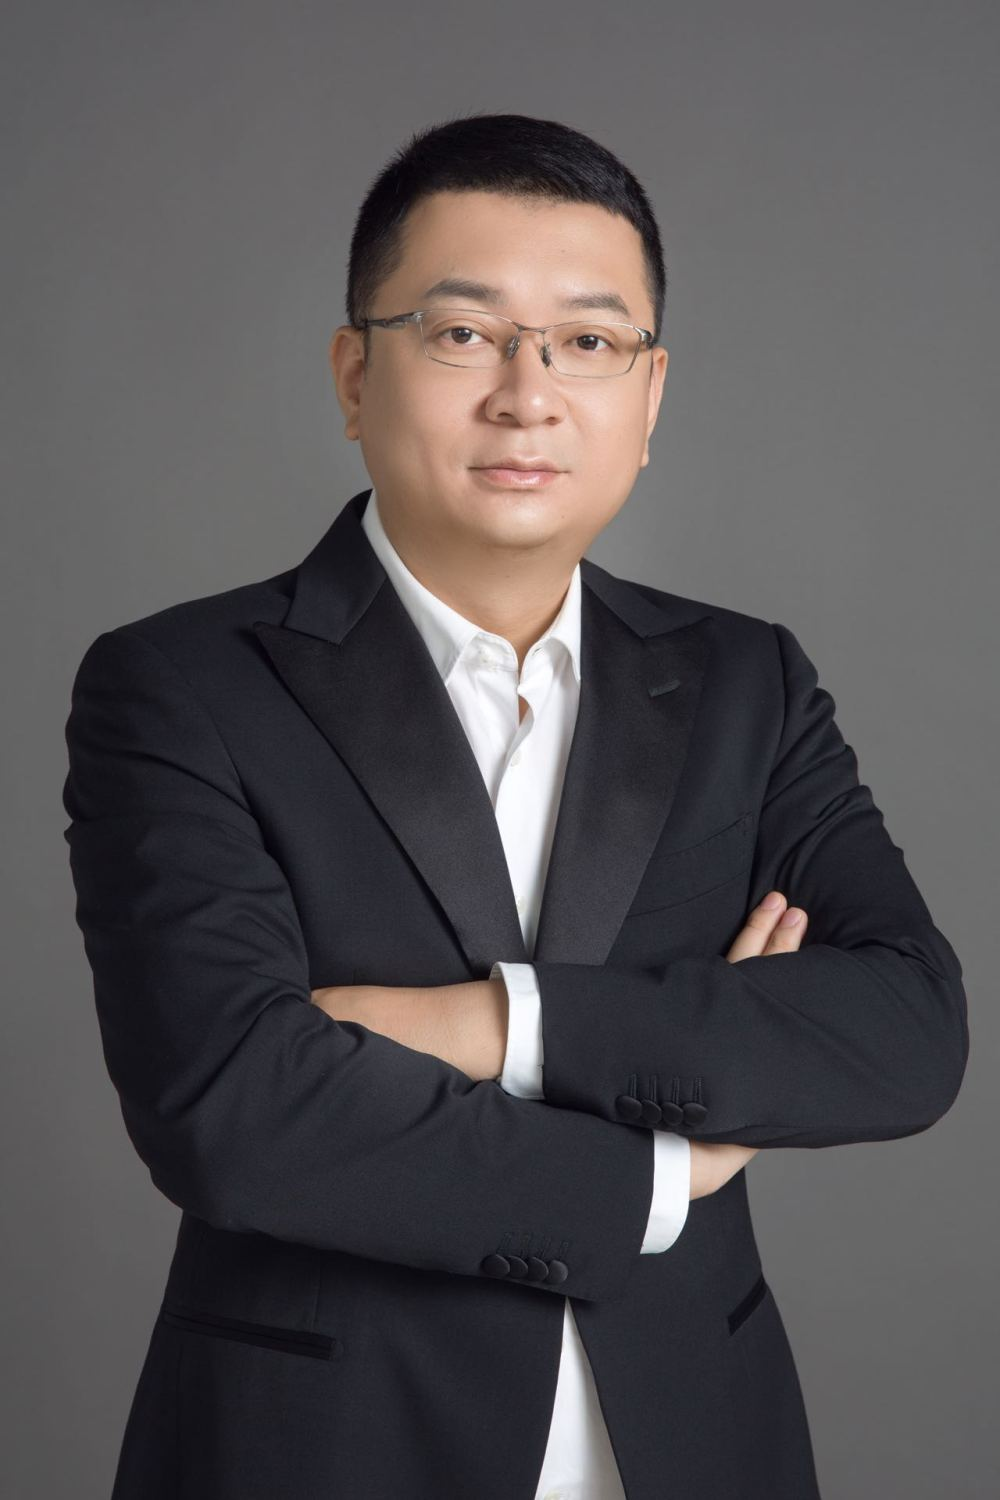 对话找钢网CEO王东：连接中创造价值 数字化赋能传统行业大有可为